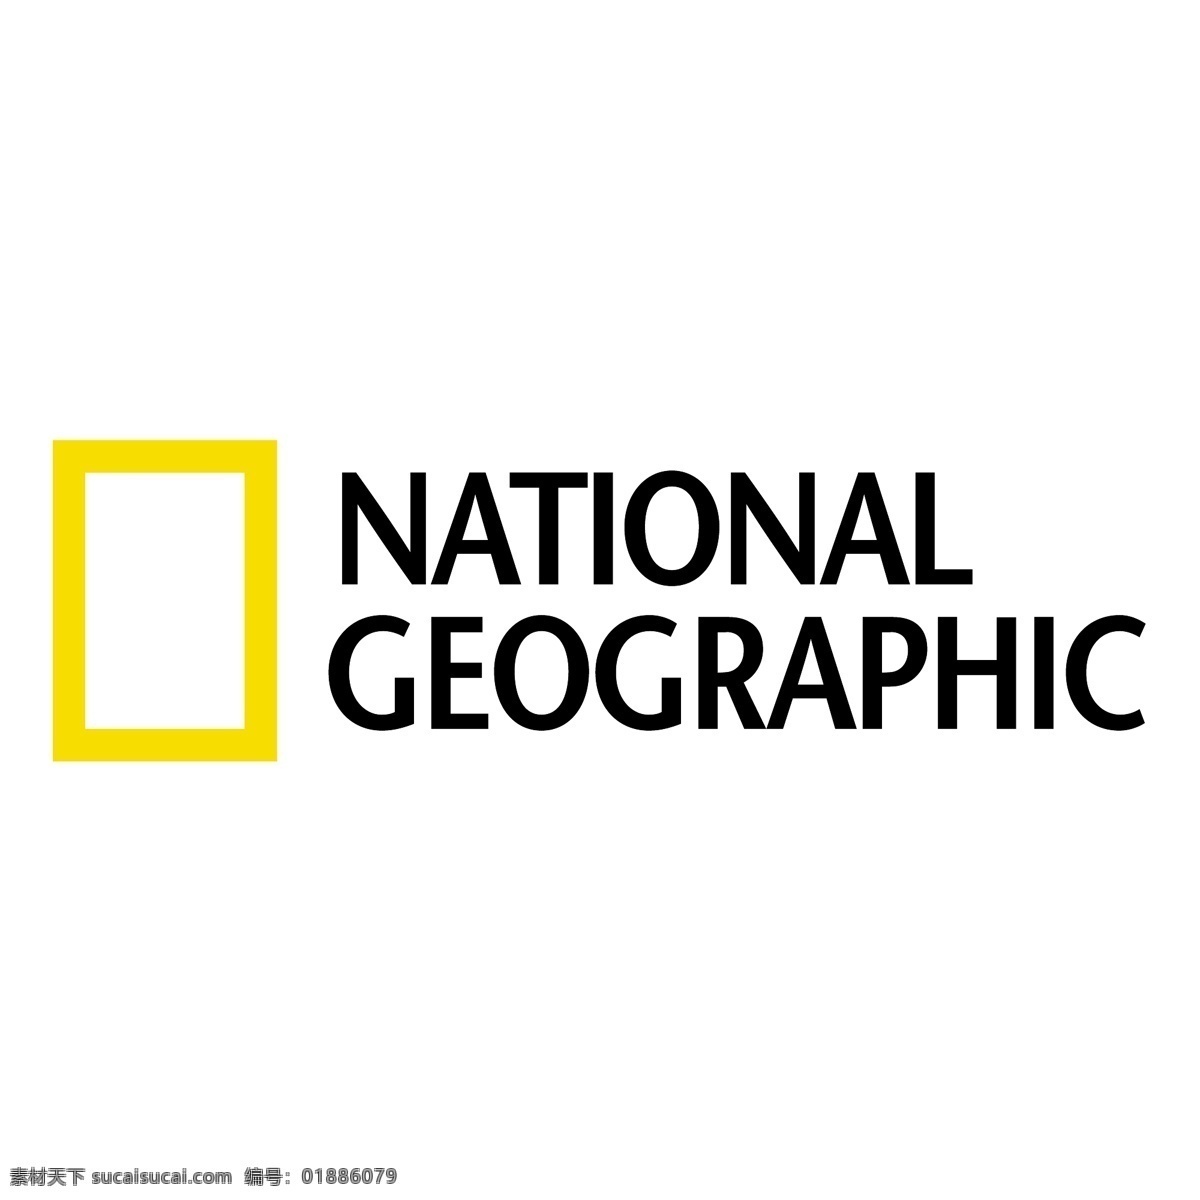 美国 国家地理 杂志 标识 公司 免费 品牌 品牌标识 商标 矢量标志下载 免费矢量标识 矢量 psd源文件 logo设计